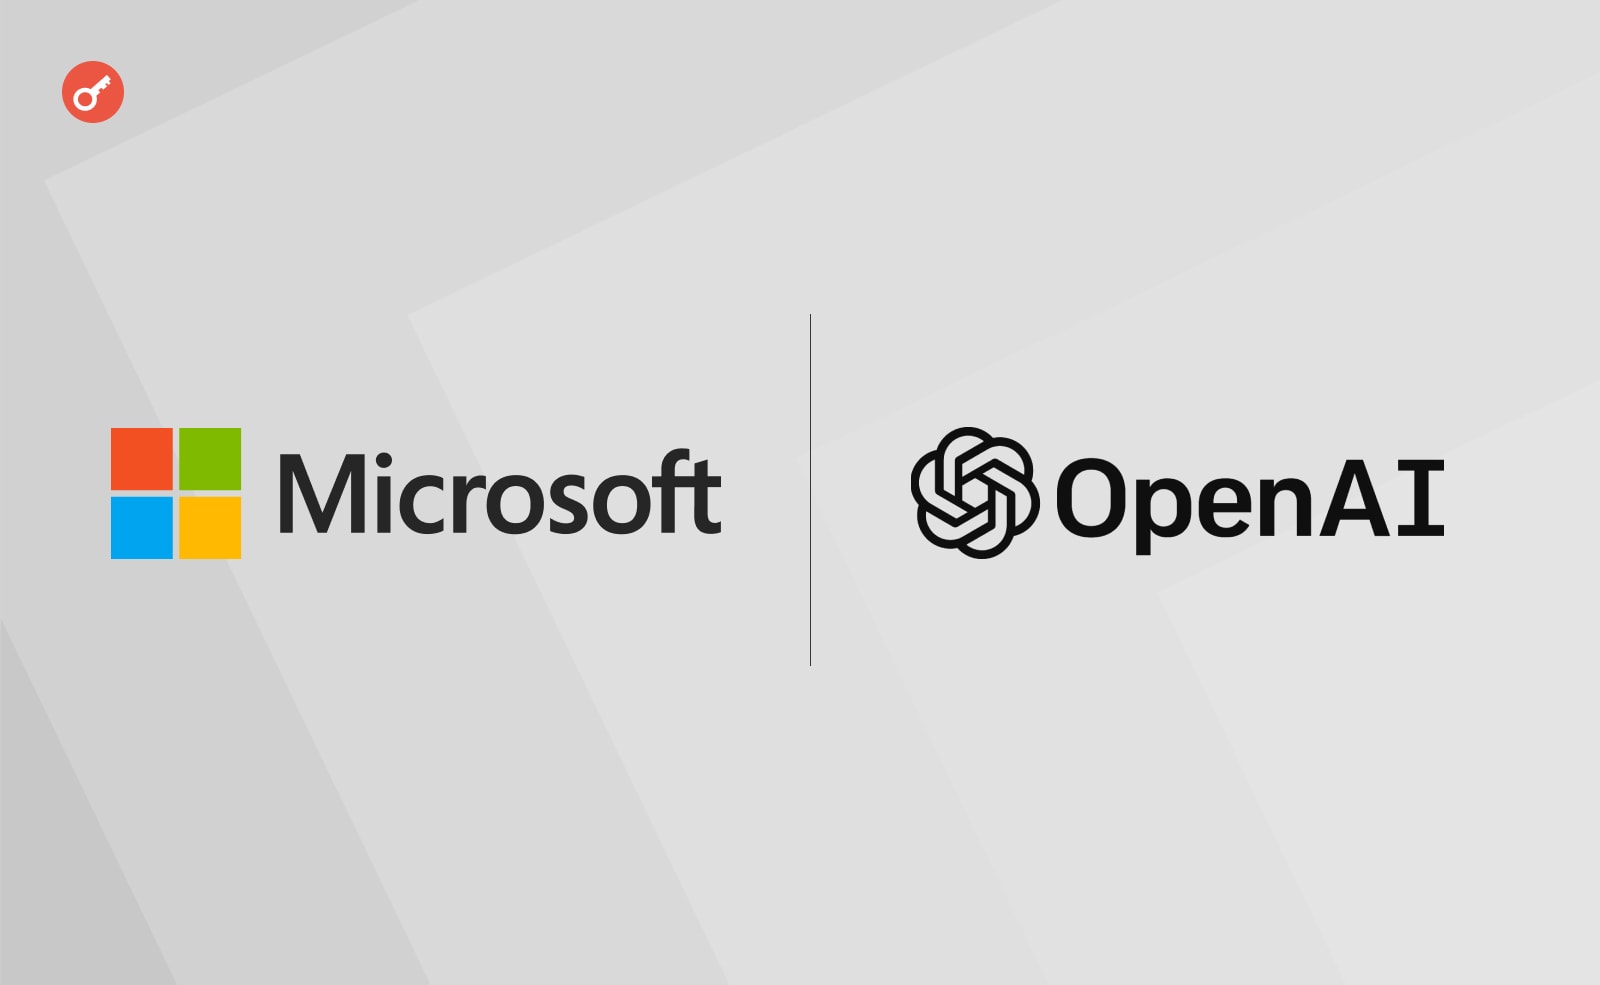 корпорация Microsoft заявила о третьем этапе долгосрочного сотрудничества с компанией-разработчиком OpenAI.